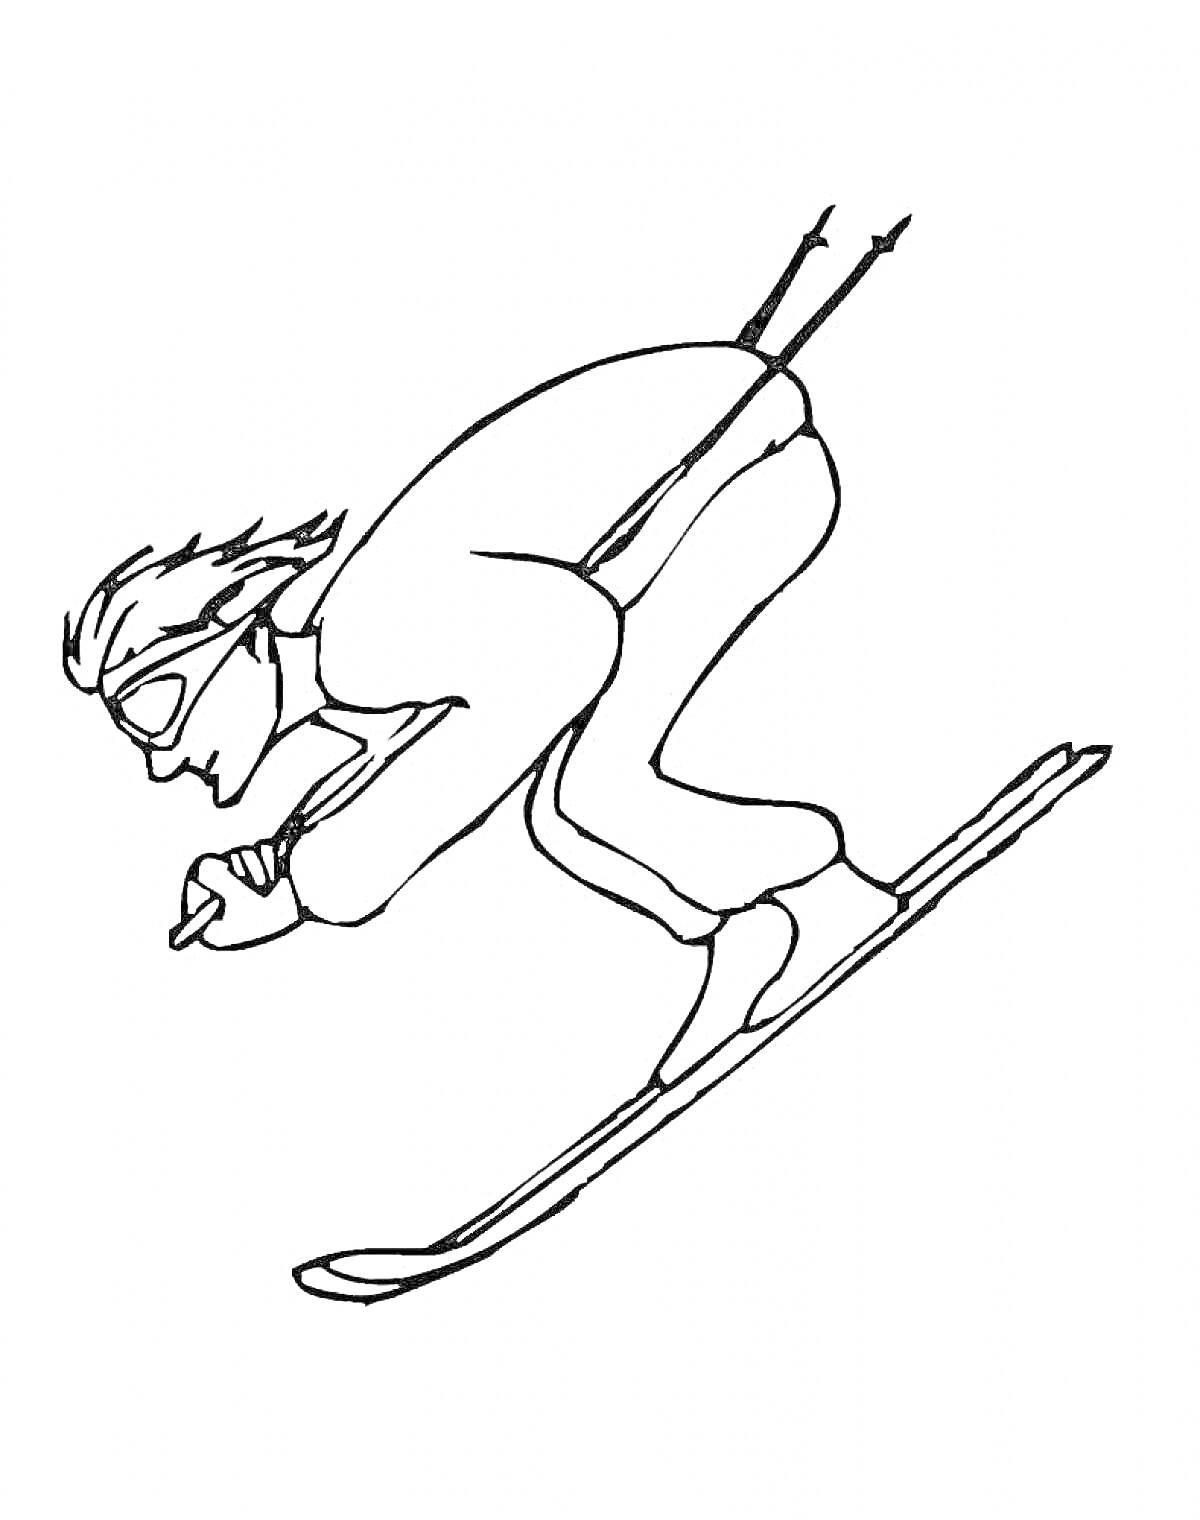  Лыжник в спортивной стойке, в очках и с палками